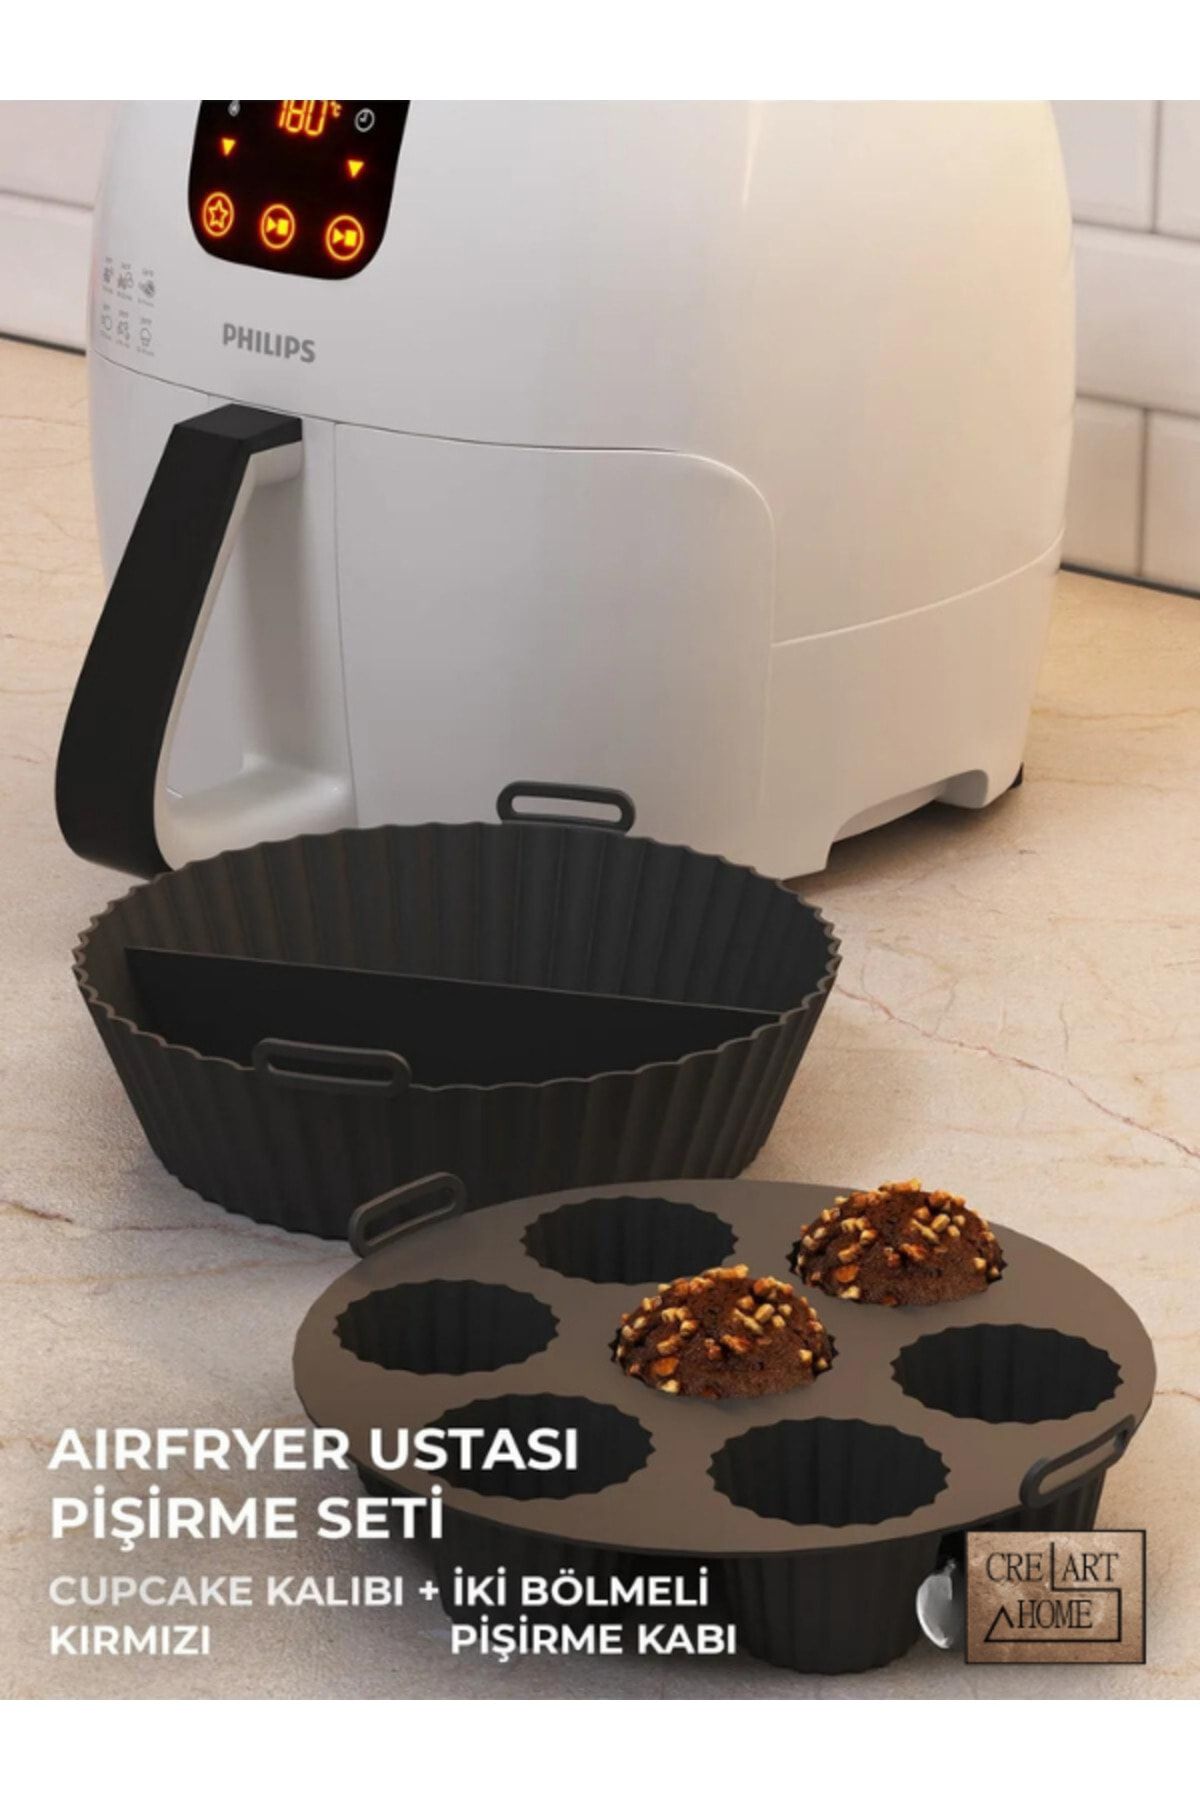 CREARTHOME Airfryer Ustası Pişirme Seti 2'li - Airfryer Pişirme Silikon Kağıdı Aksesuar Siyah Renk Bpa Free